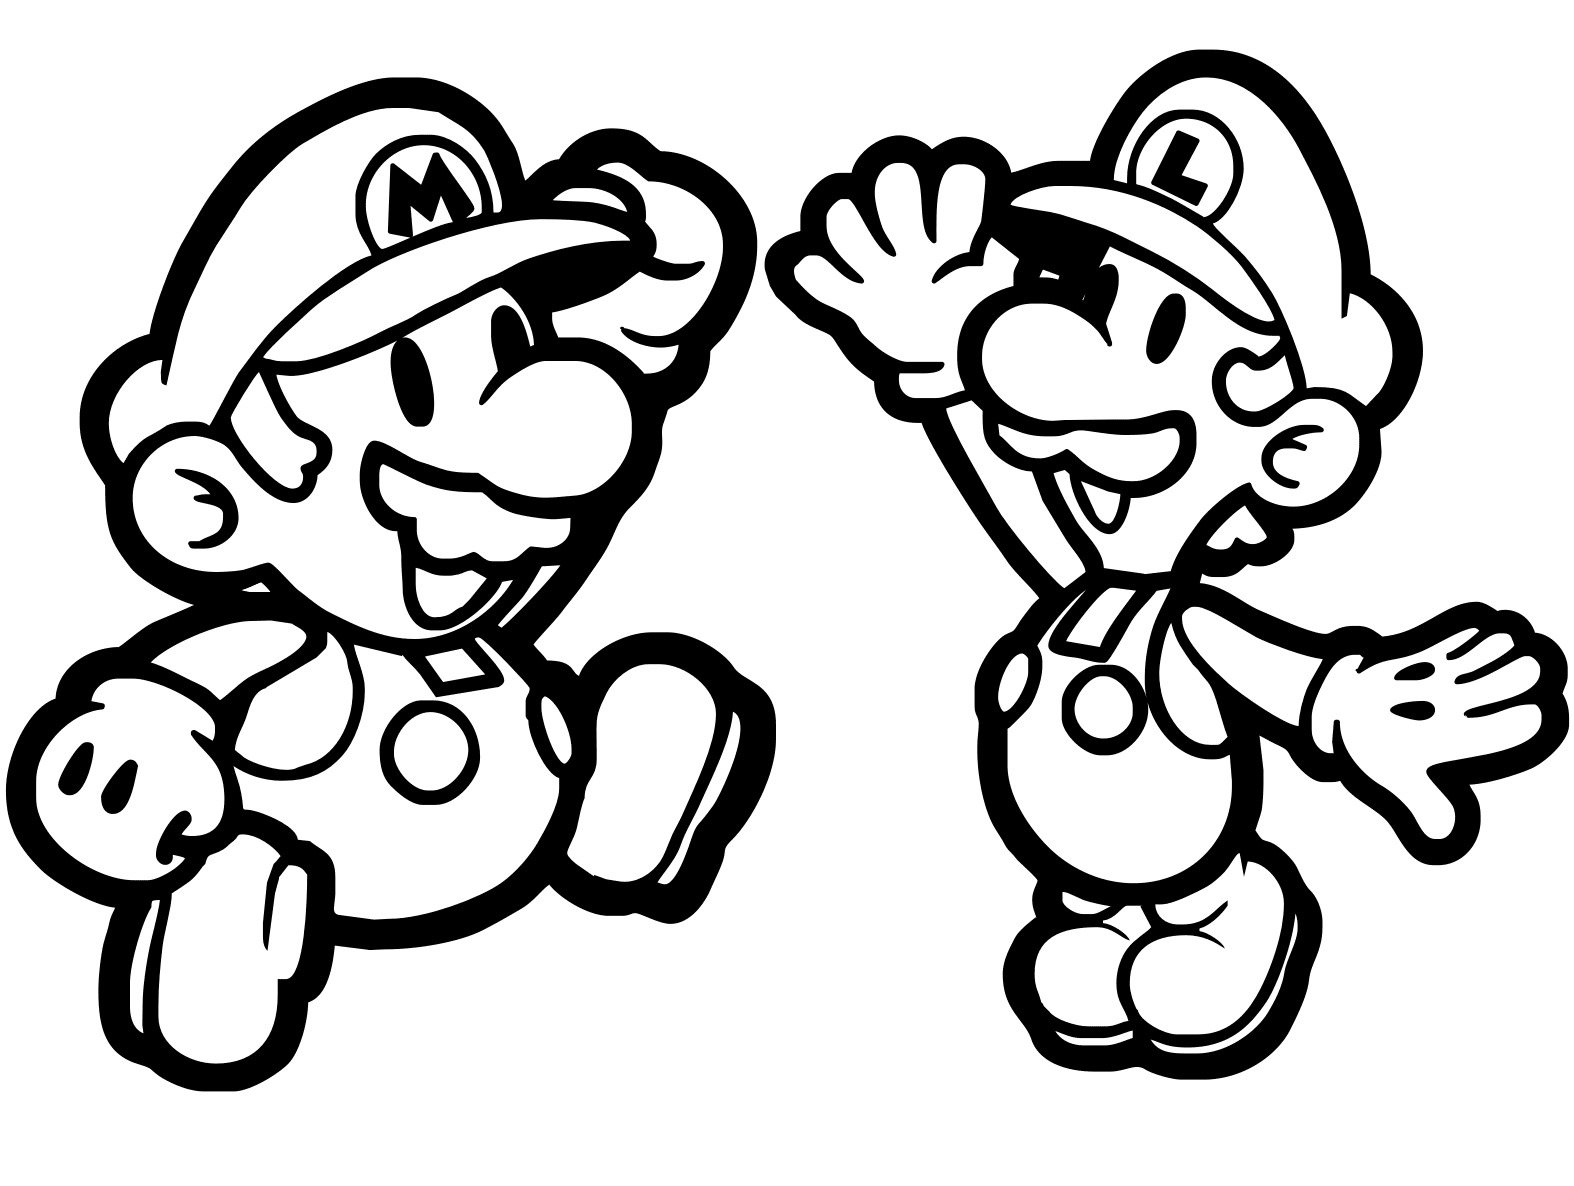 Chibi Mario e Luigi high five Desenhos para colorir